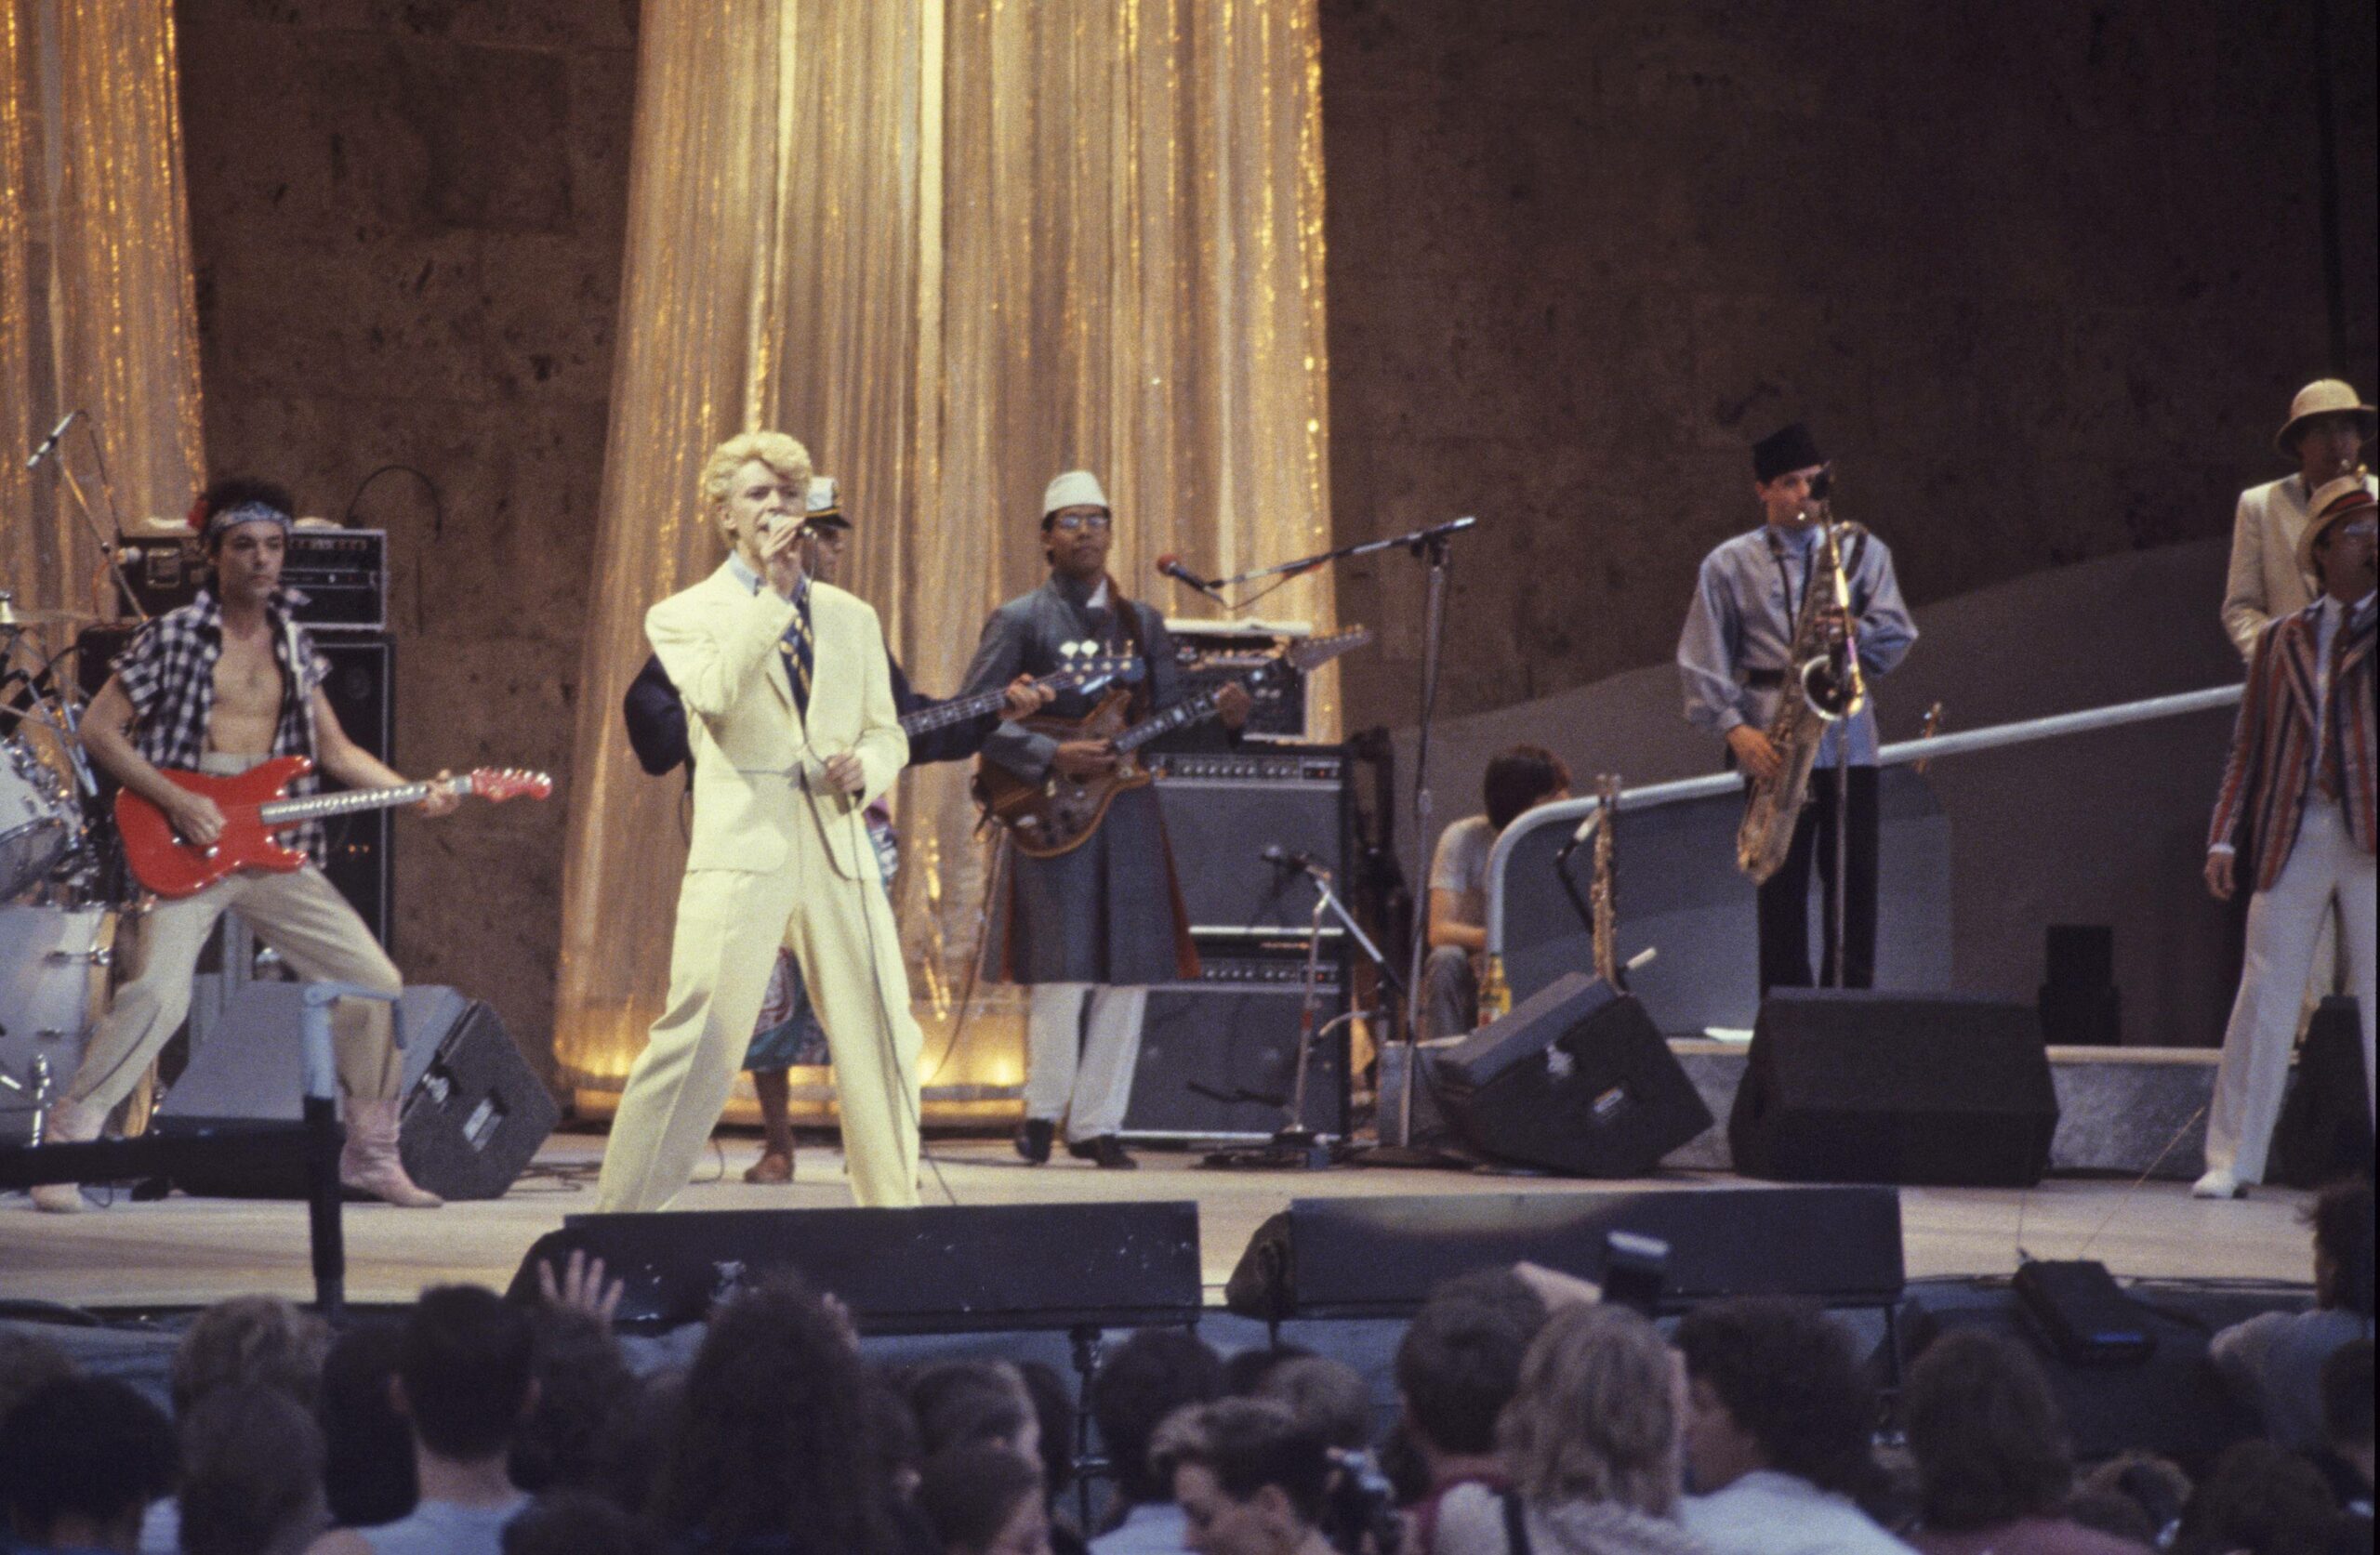 David Bowie bei einem Konzert in der Waldbühne, Berlin 1983. Foto: Imago/T. Skupin/Future Image